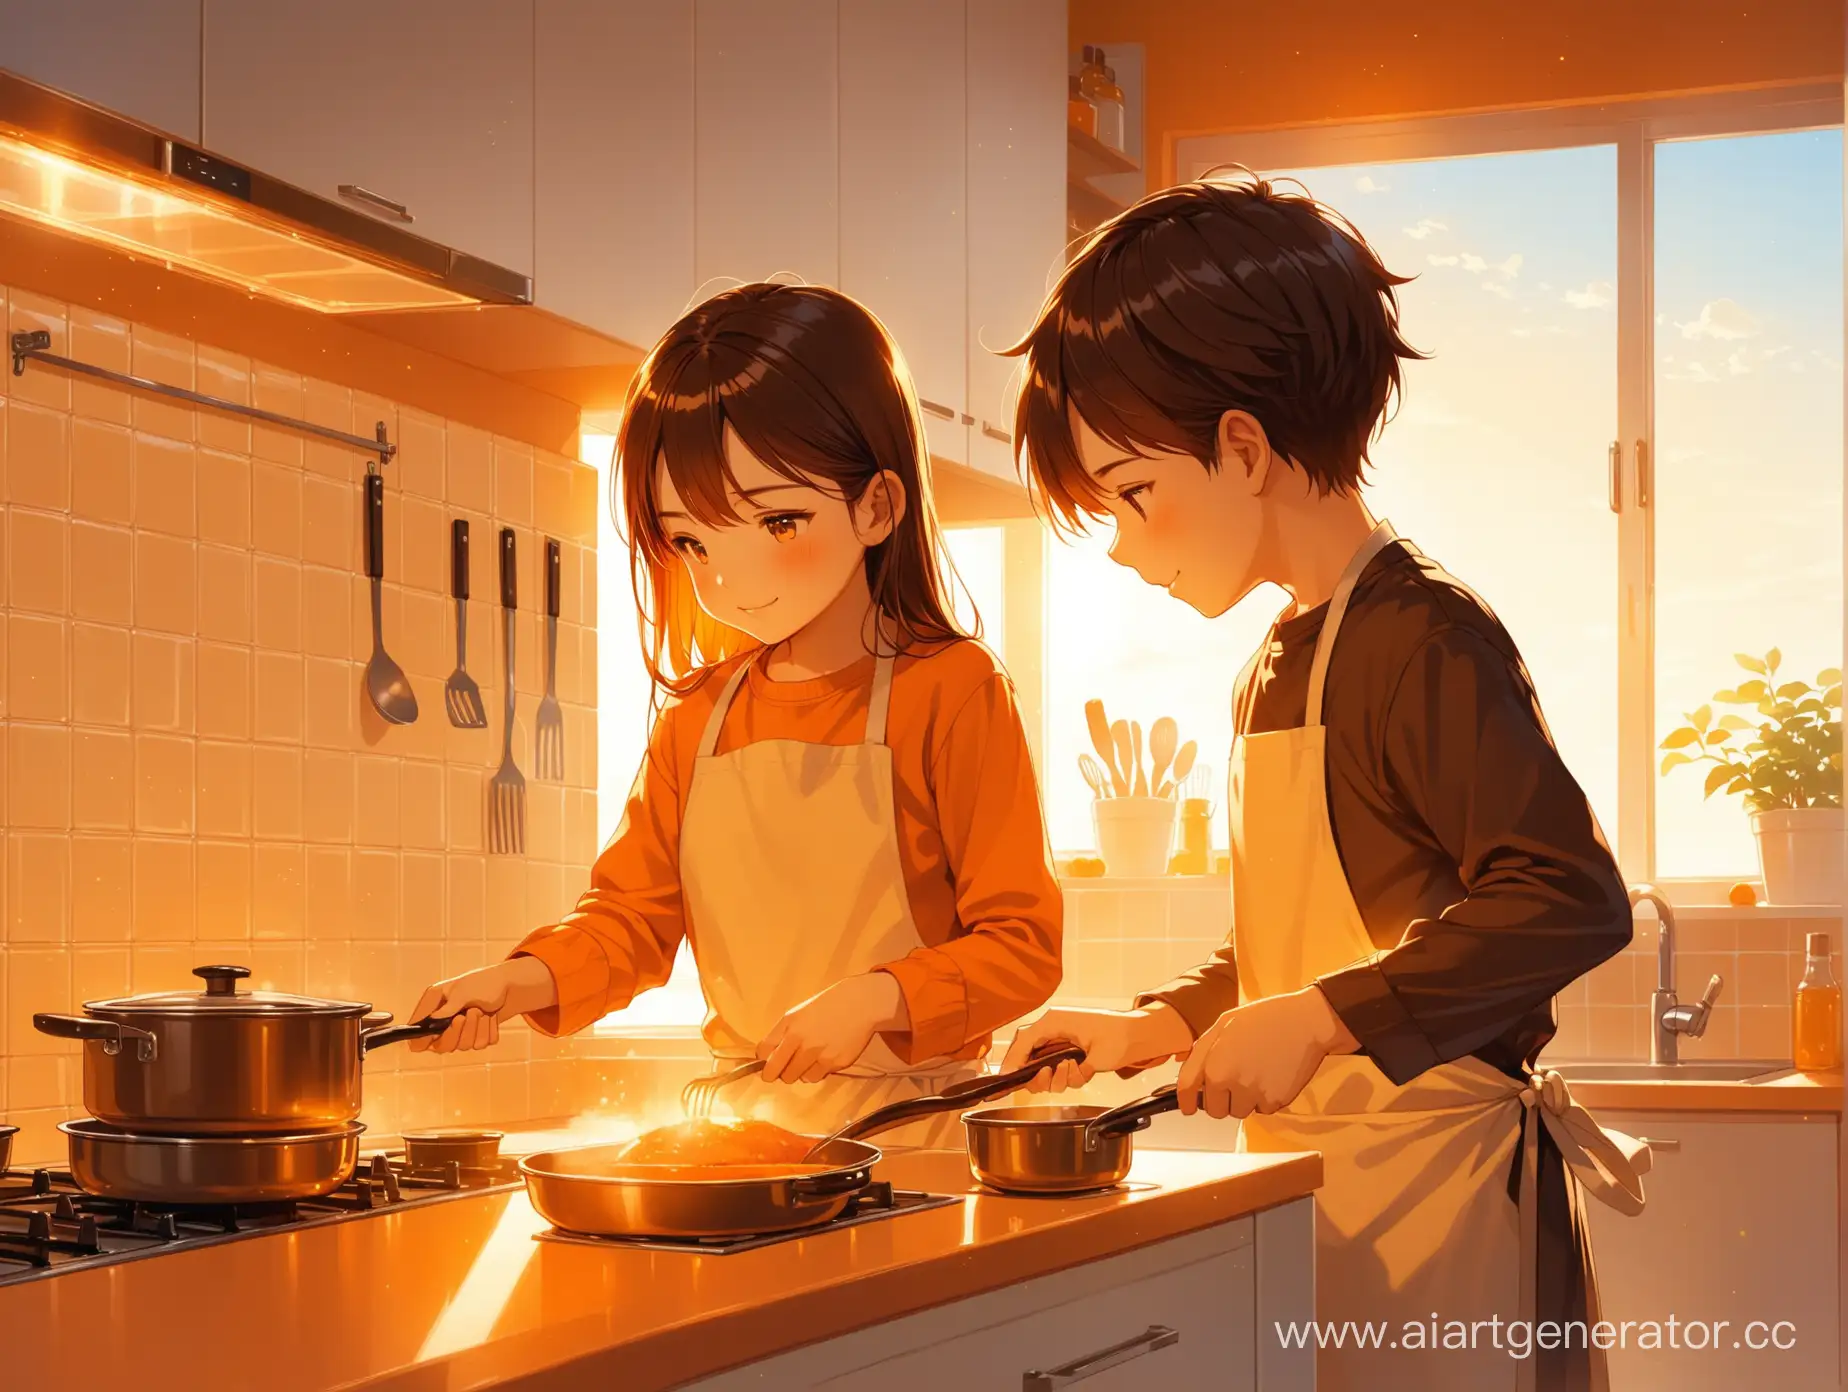 Парень и девушка готовят вместе на светлой кухни, оранжевое освещение